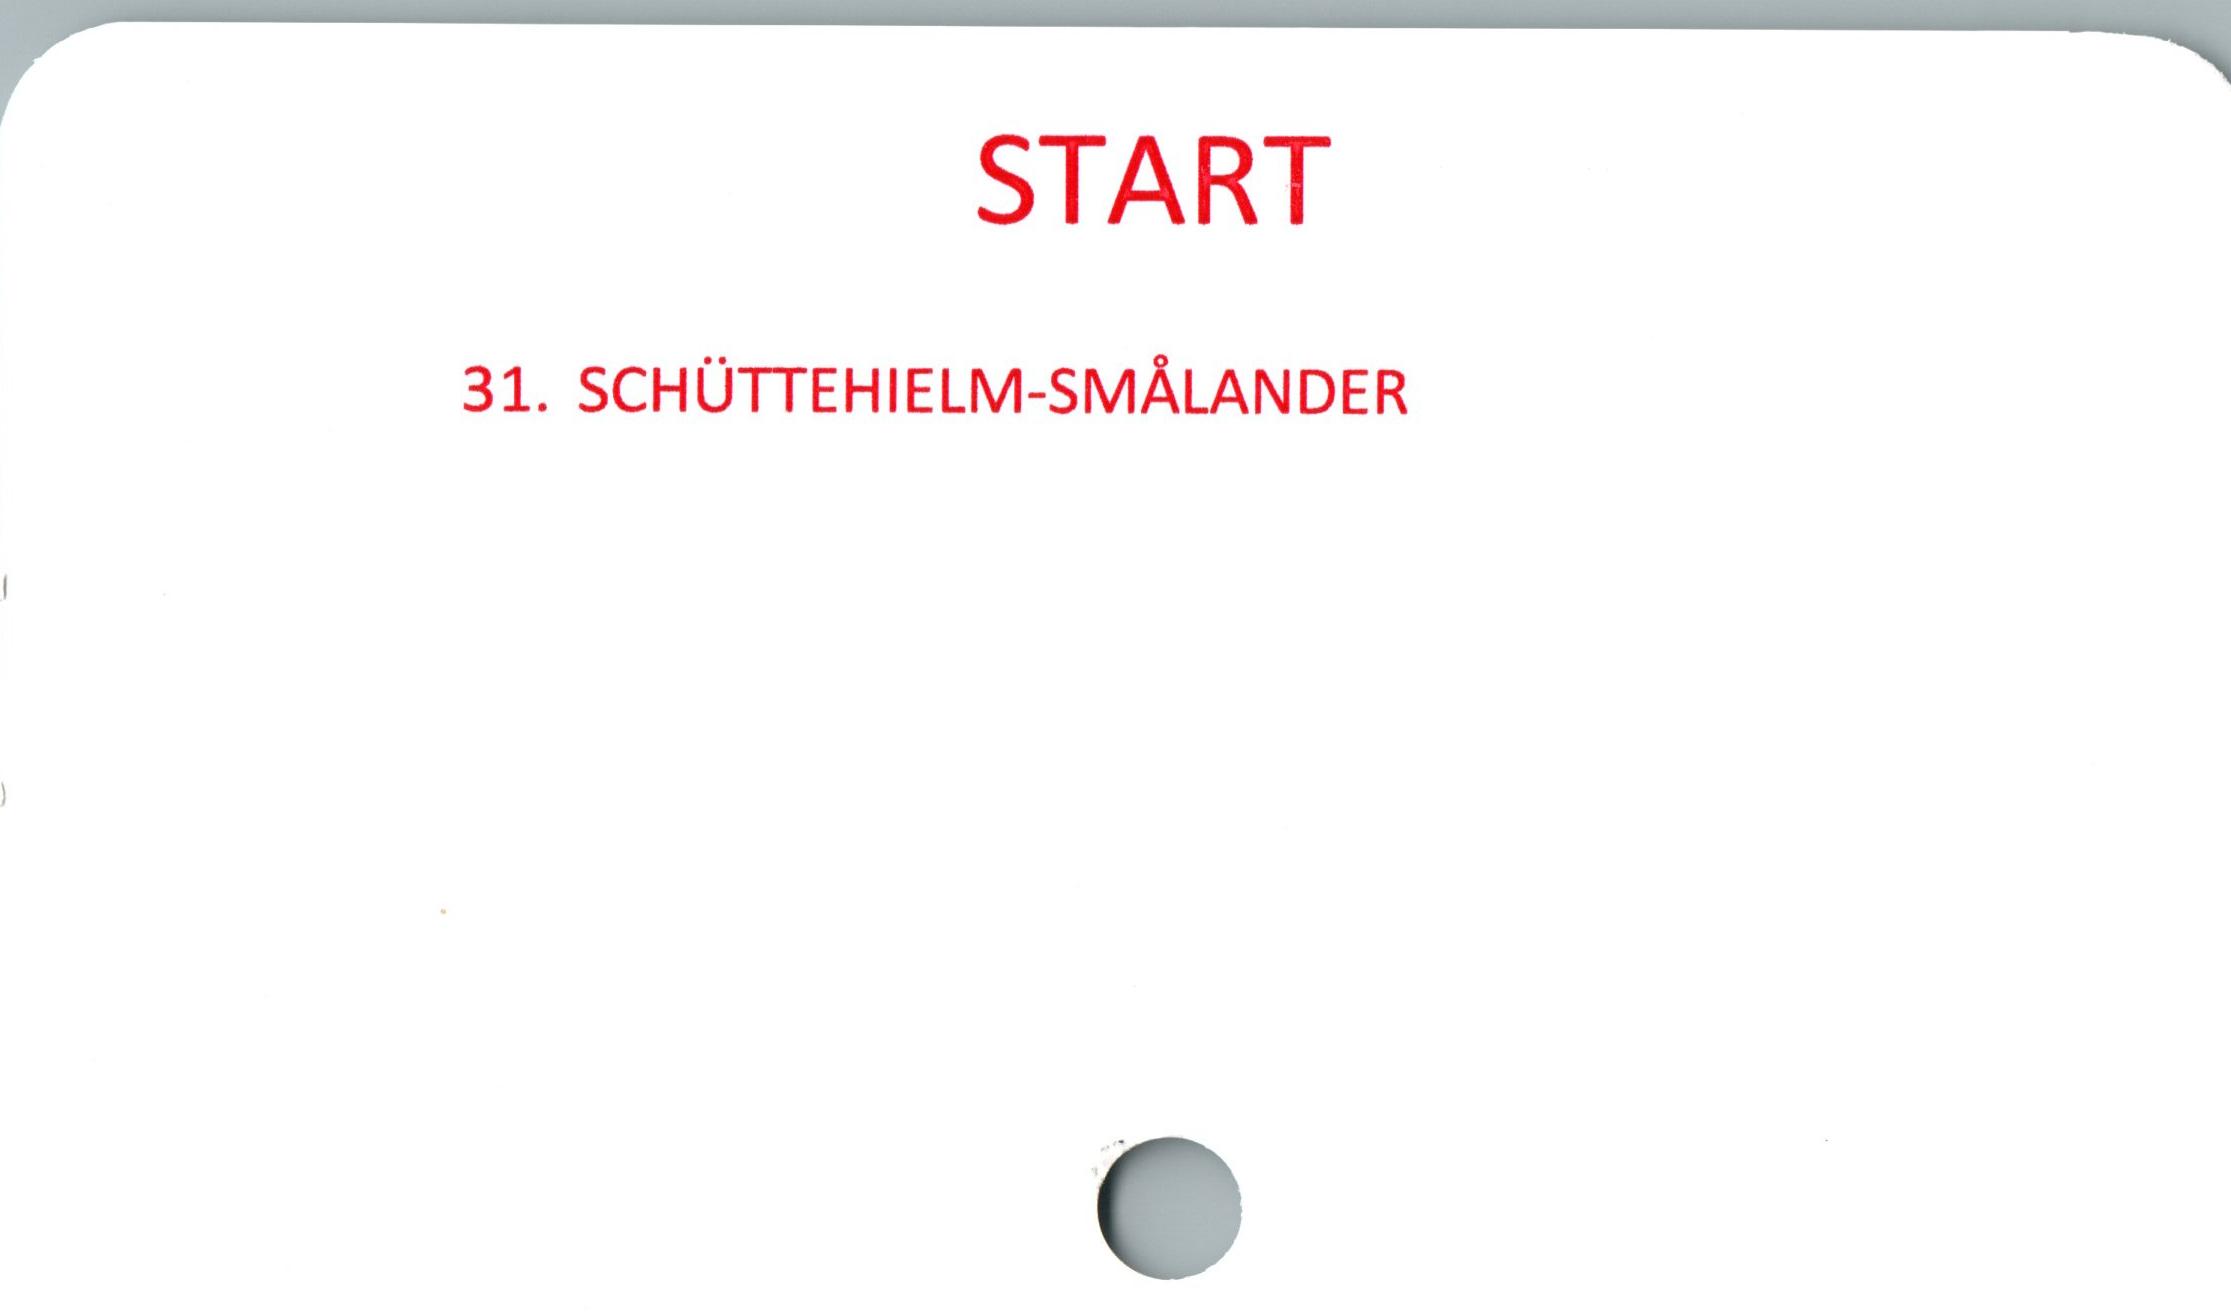  ﻿START
31. SCHUTTEHIELM-SMÅLANDER